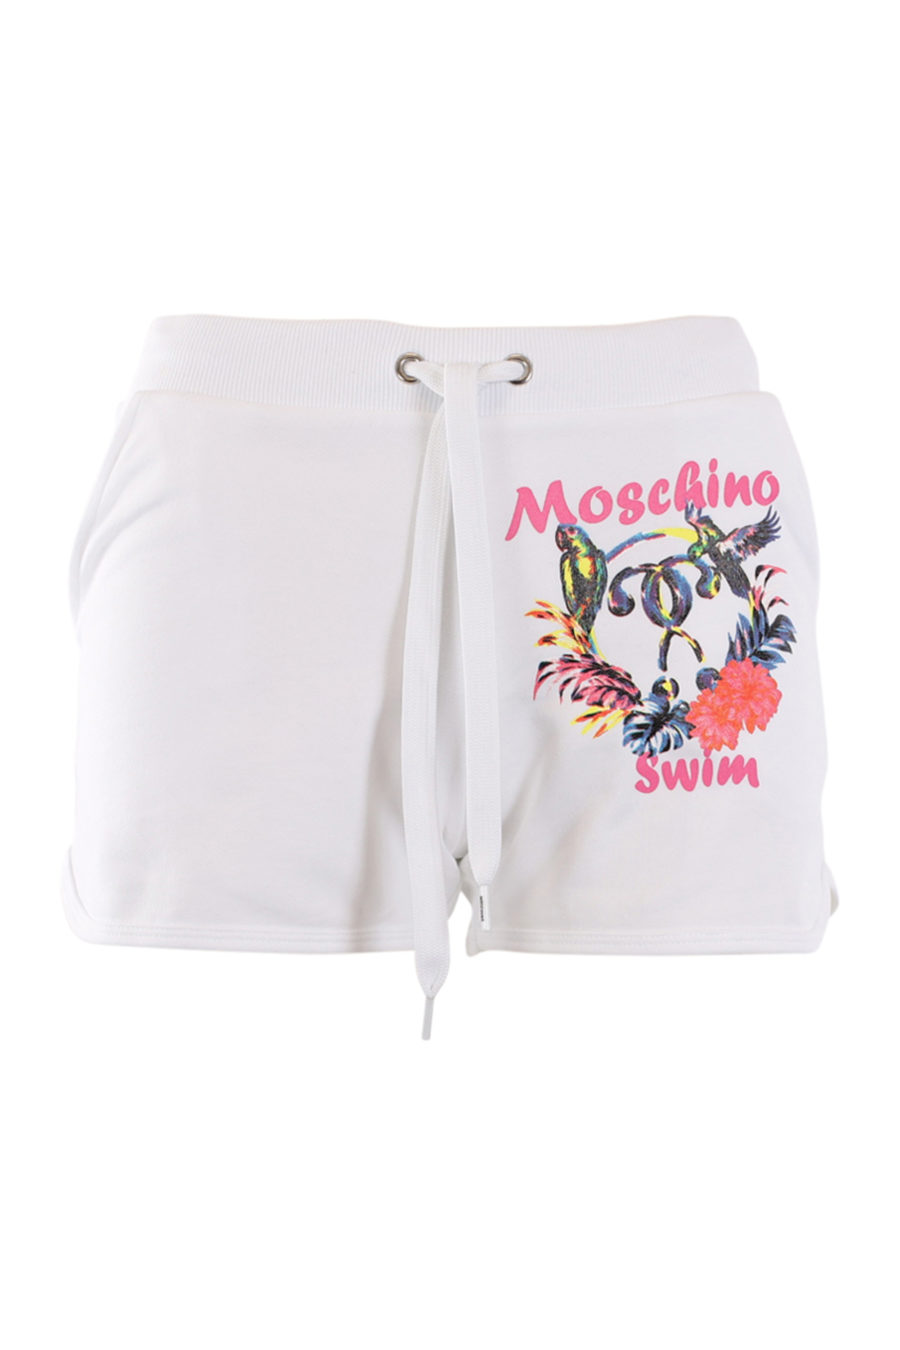 Pantalón corto blanco con logo tropical lateral - IMG 0561